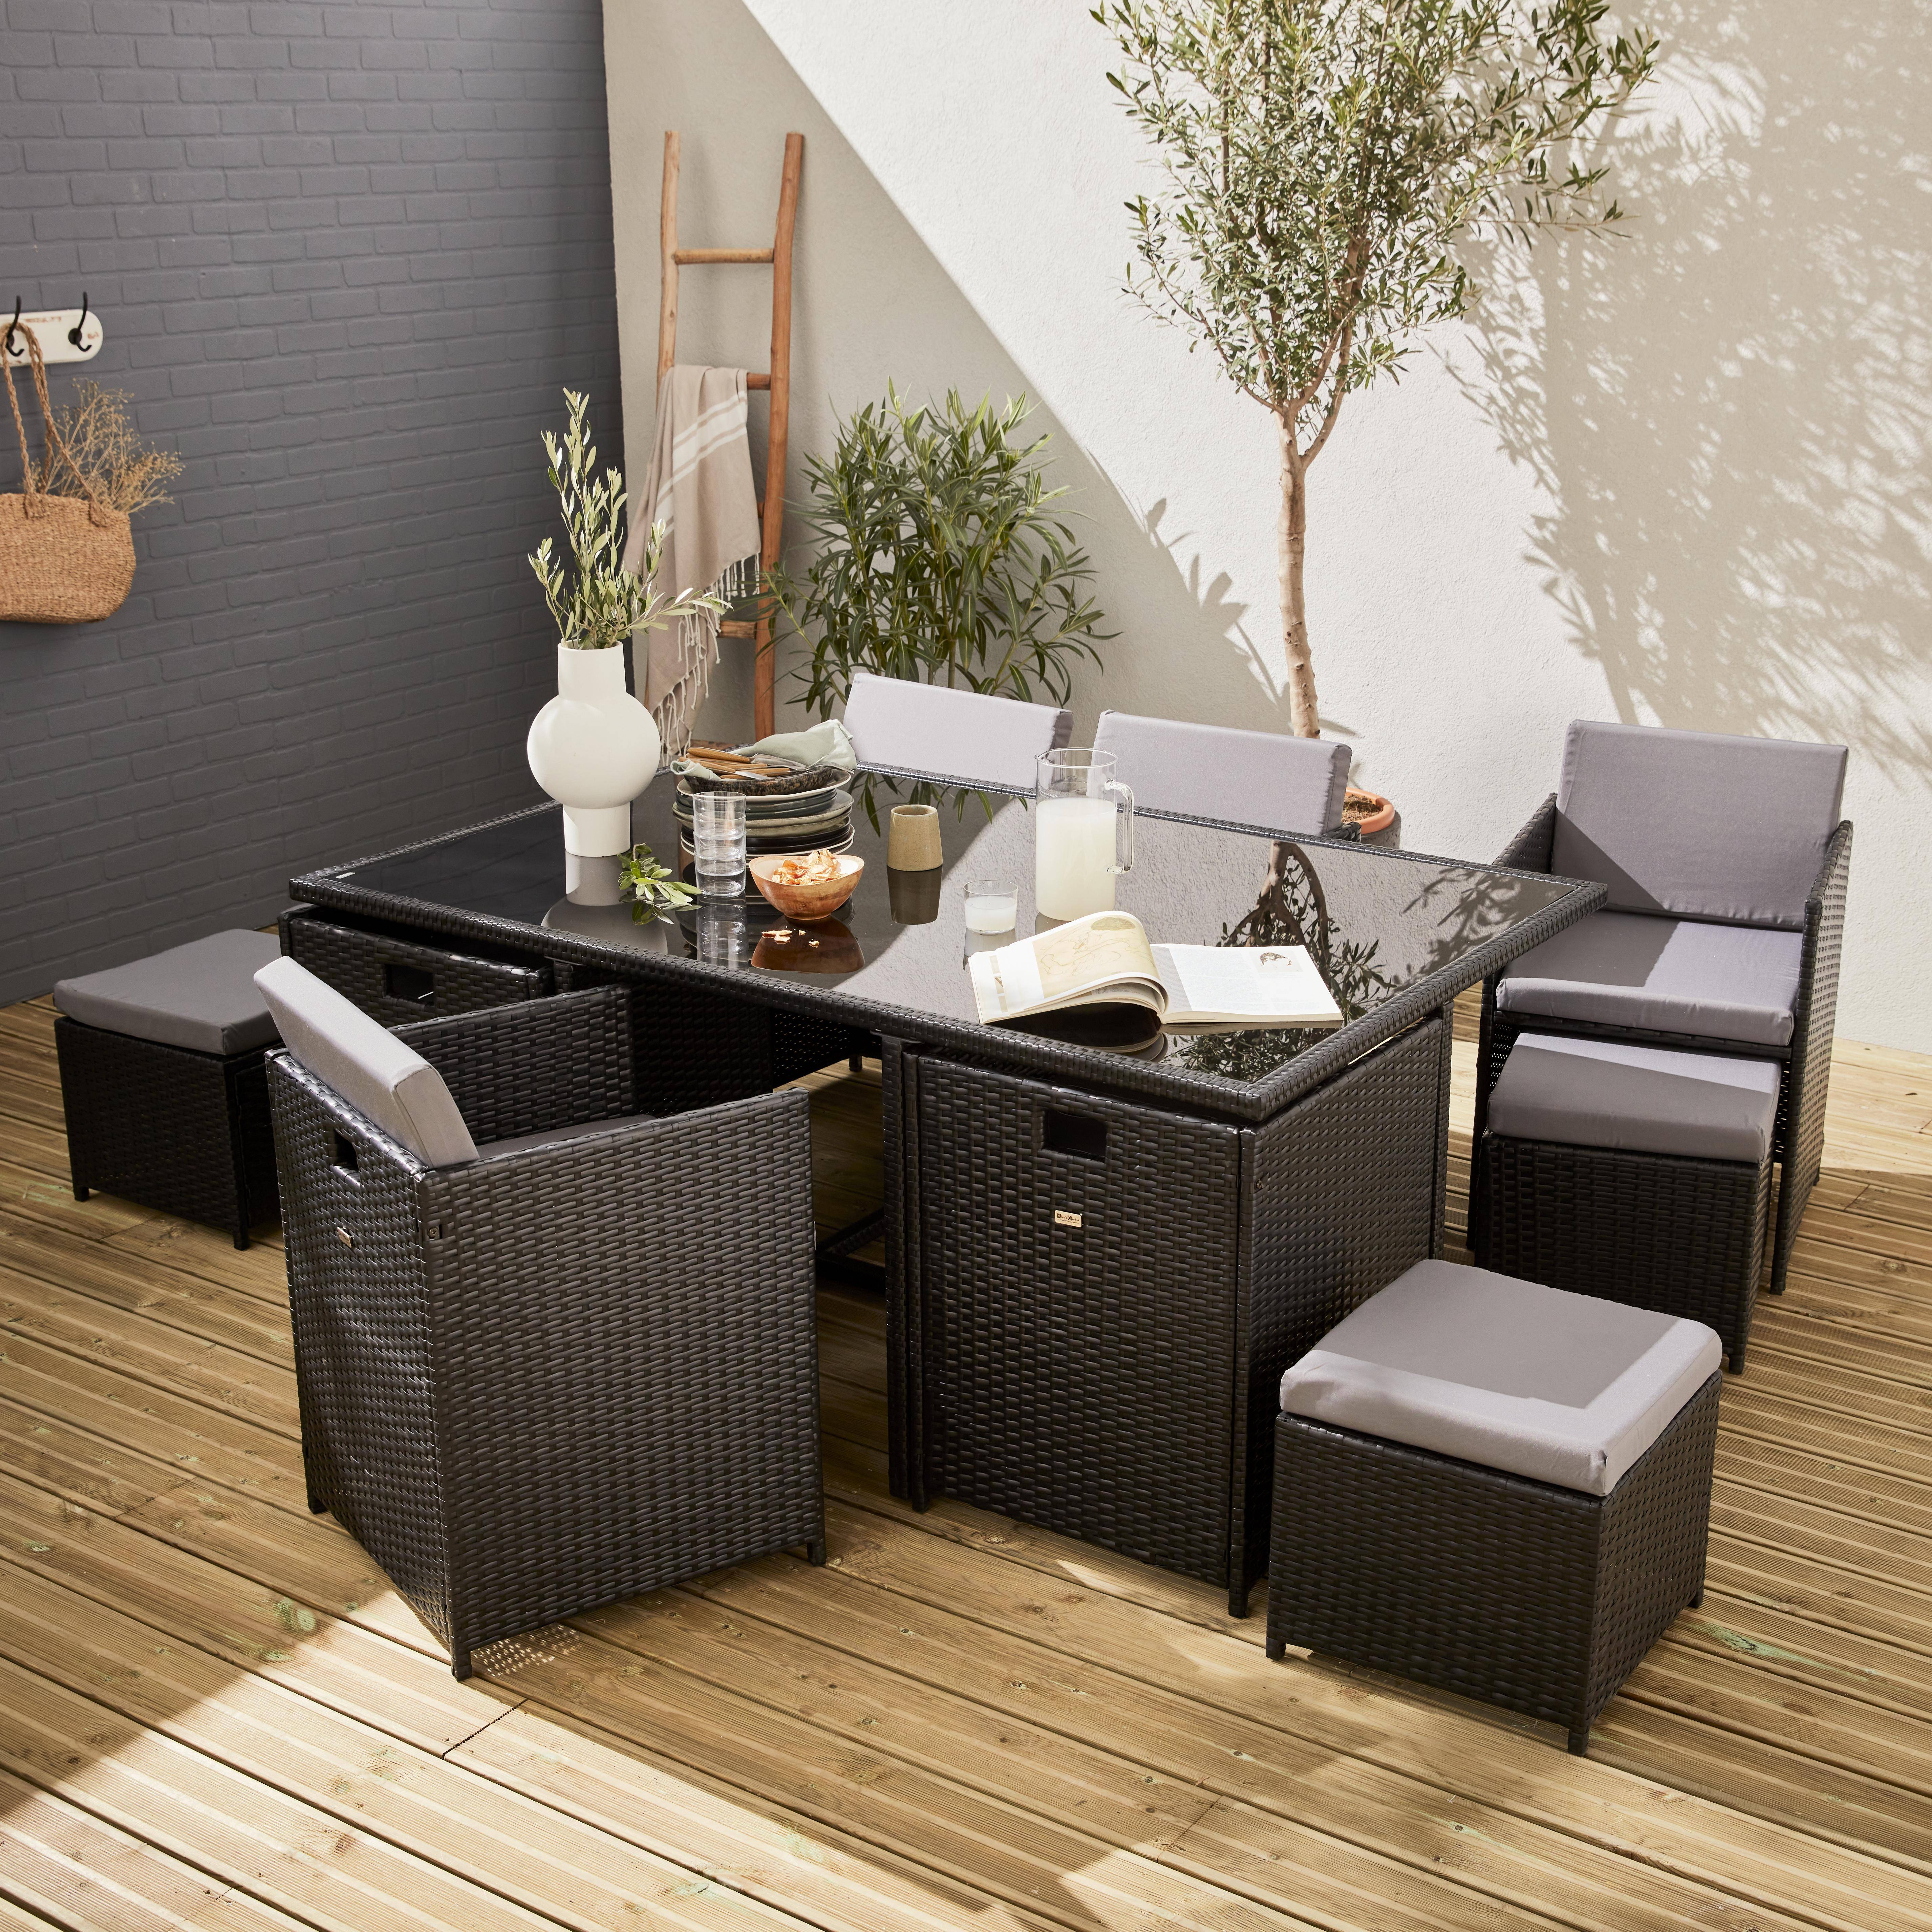 Conjunto de muebles de jardín 6-10 plazas - Fregadero - Color negro, cojines grises, mesa incorporada. Photo1